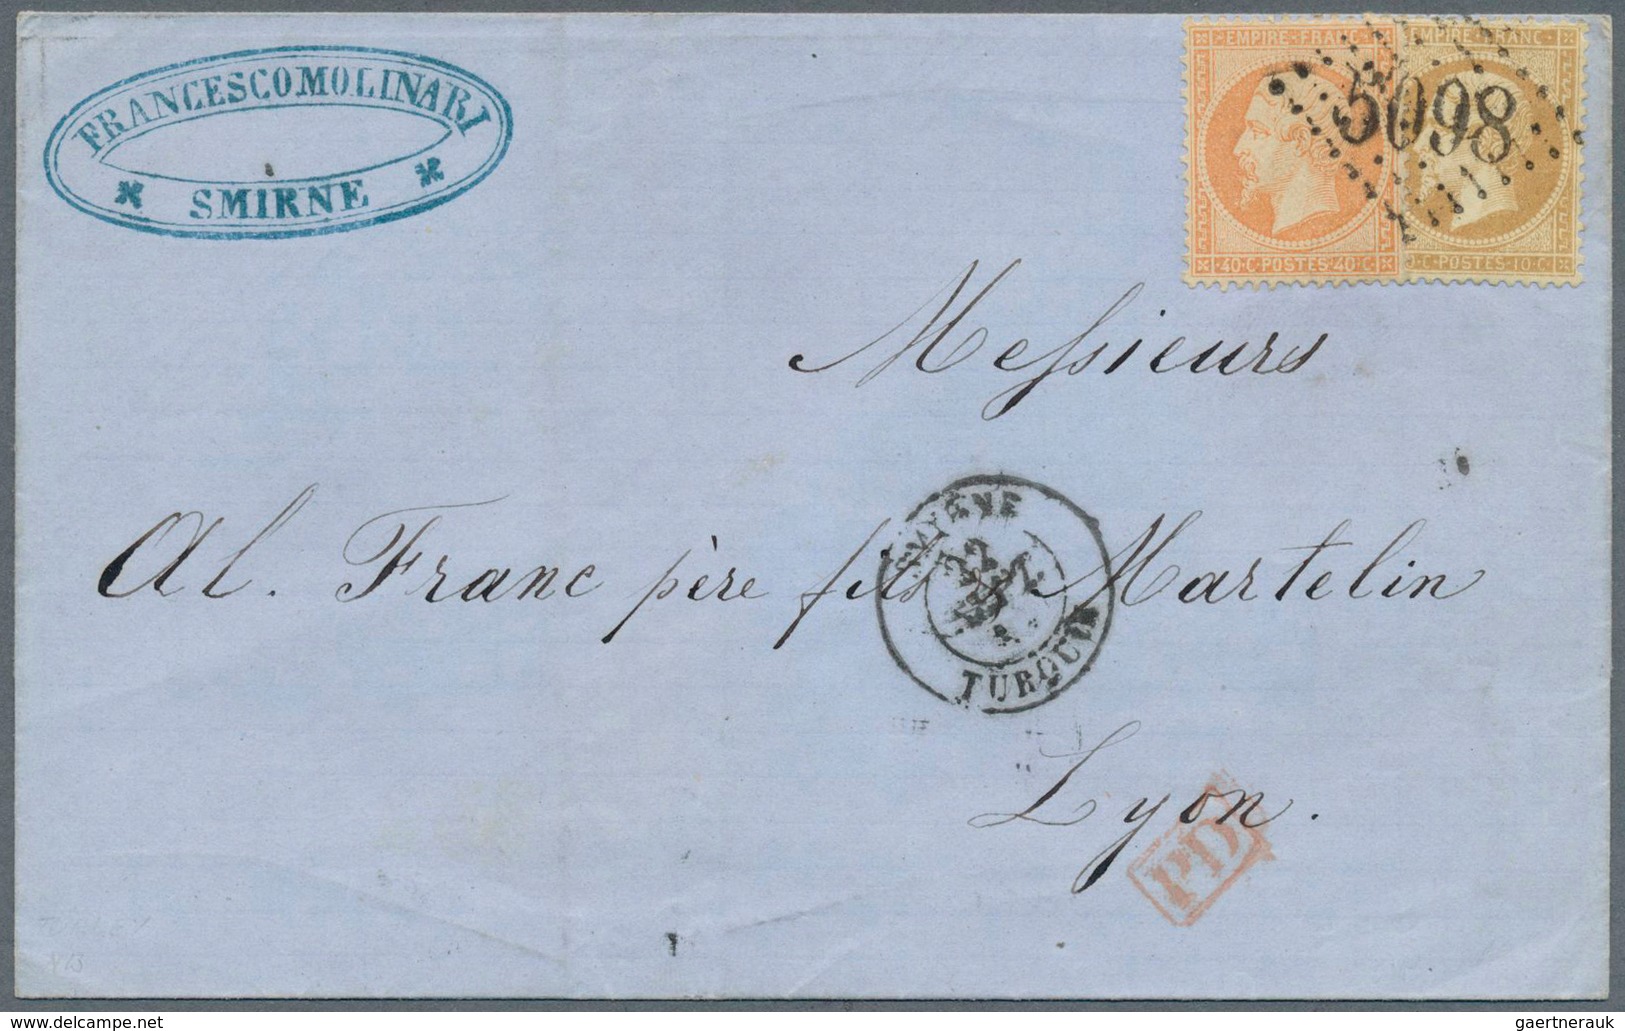 26501 Französische Post in der Levante: 1856/1902, Mediterranean/Mail from/to French Levant, group of 20 c